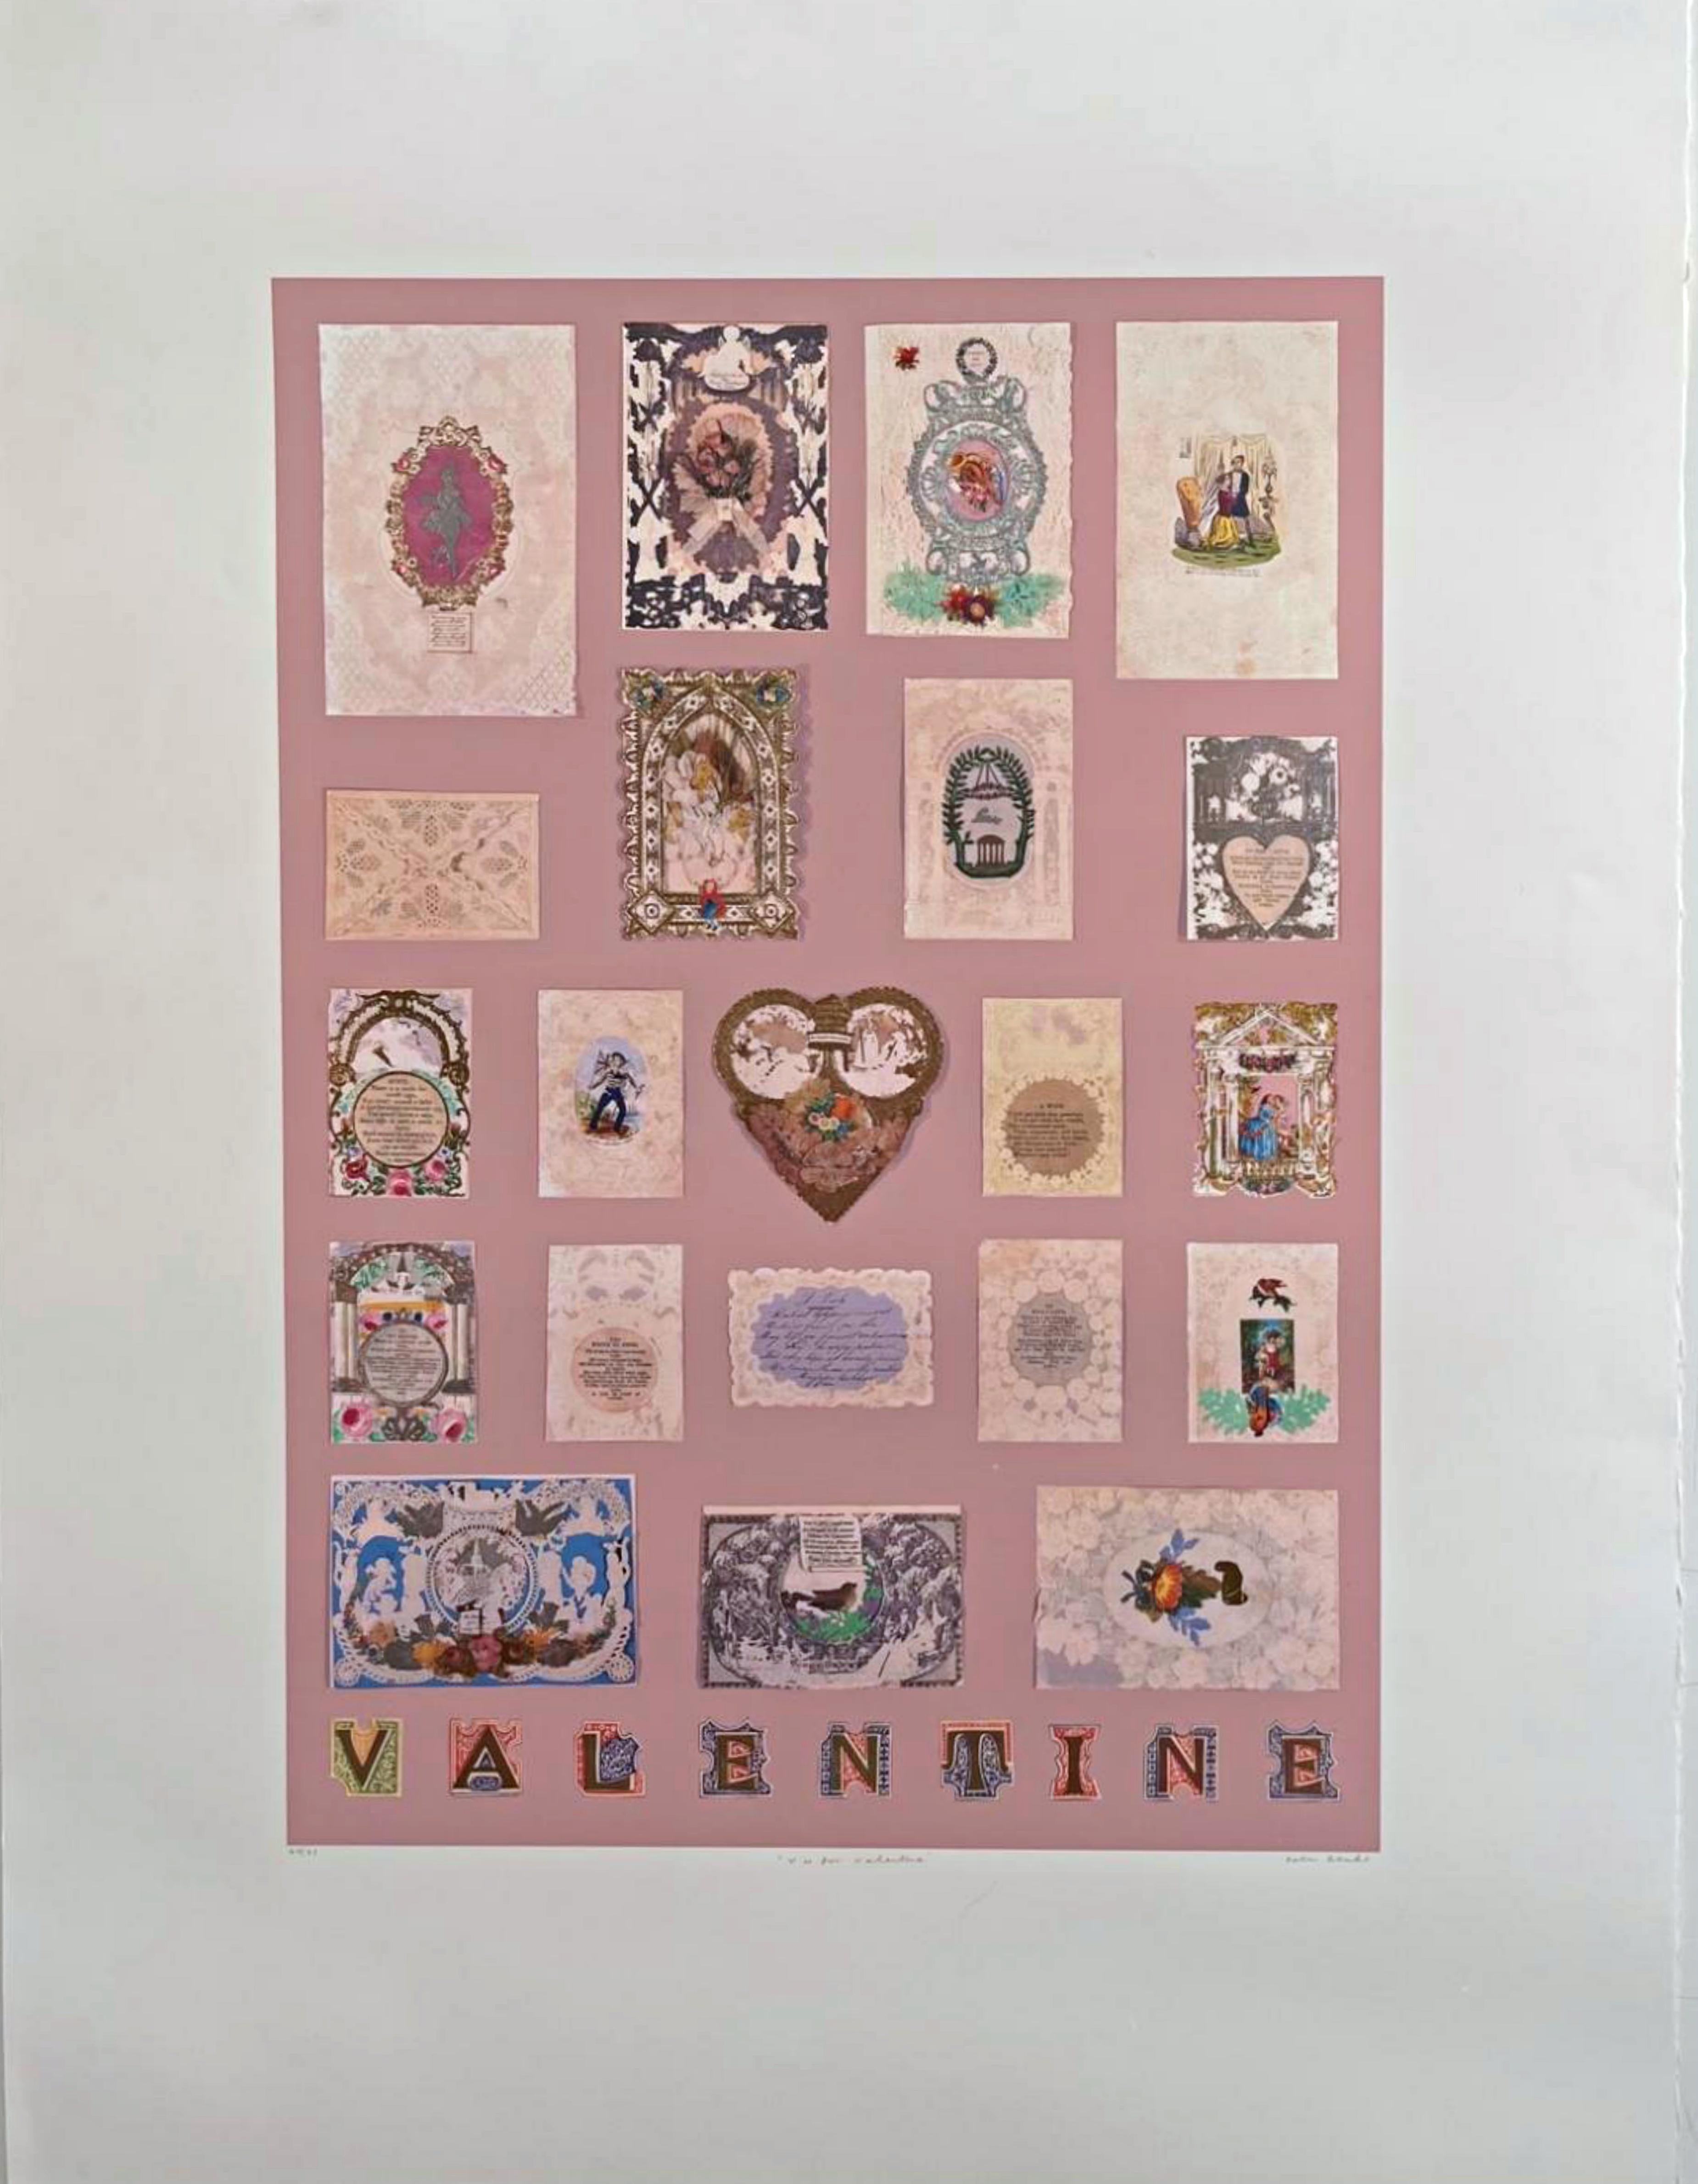 V ist für Valentin  – Print von Peter Blake